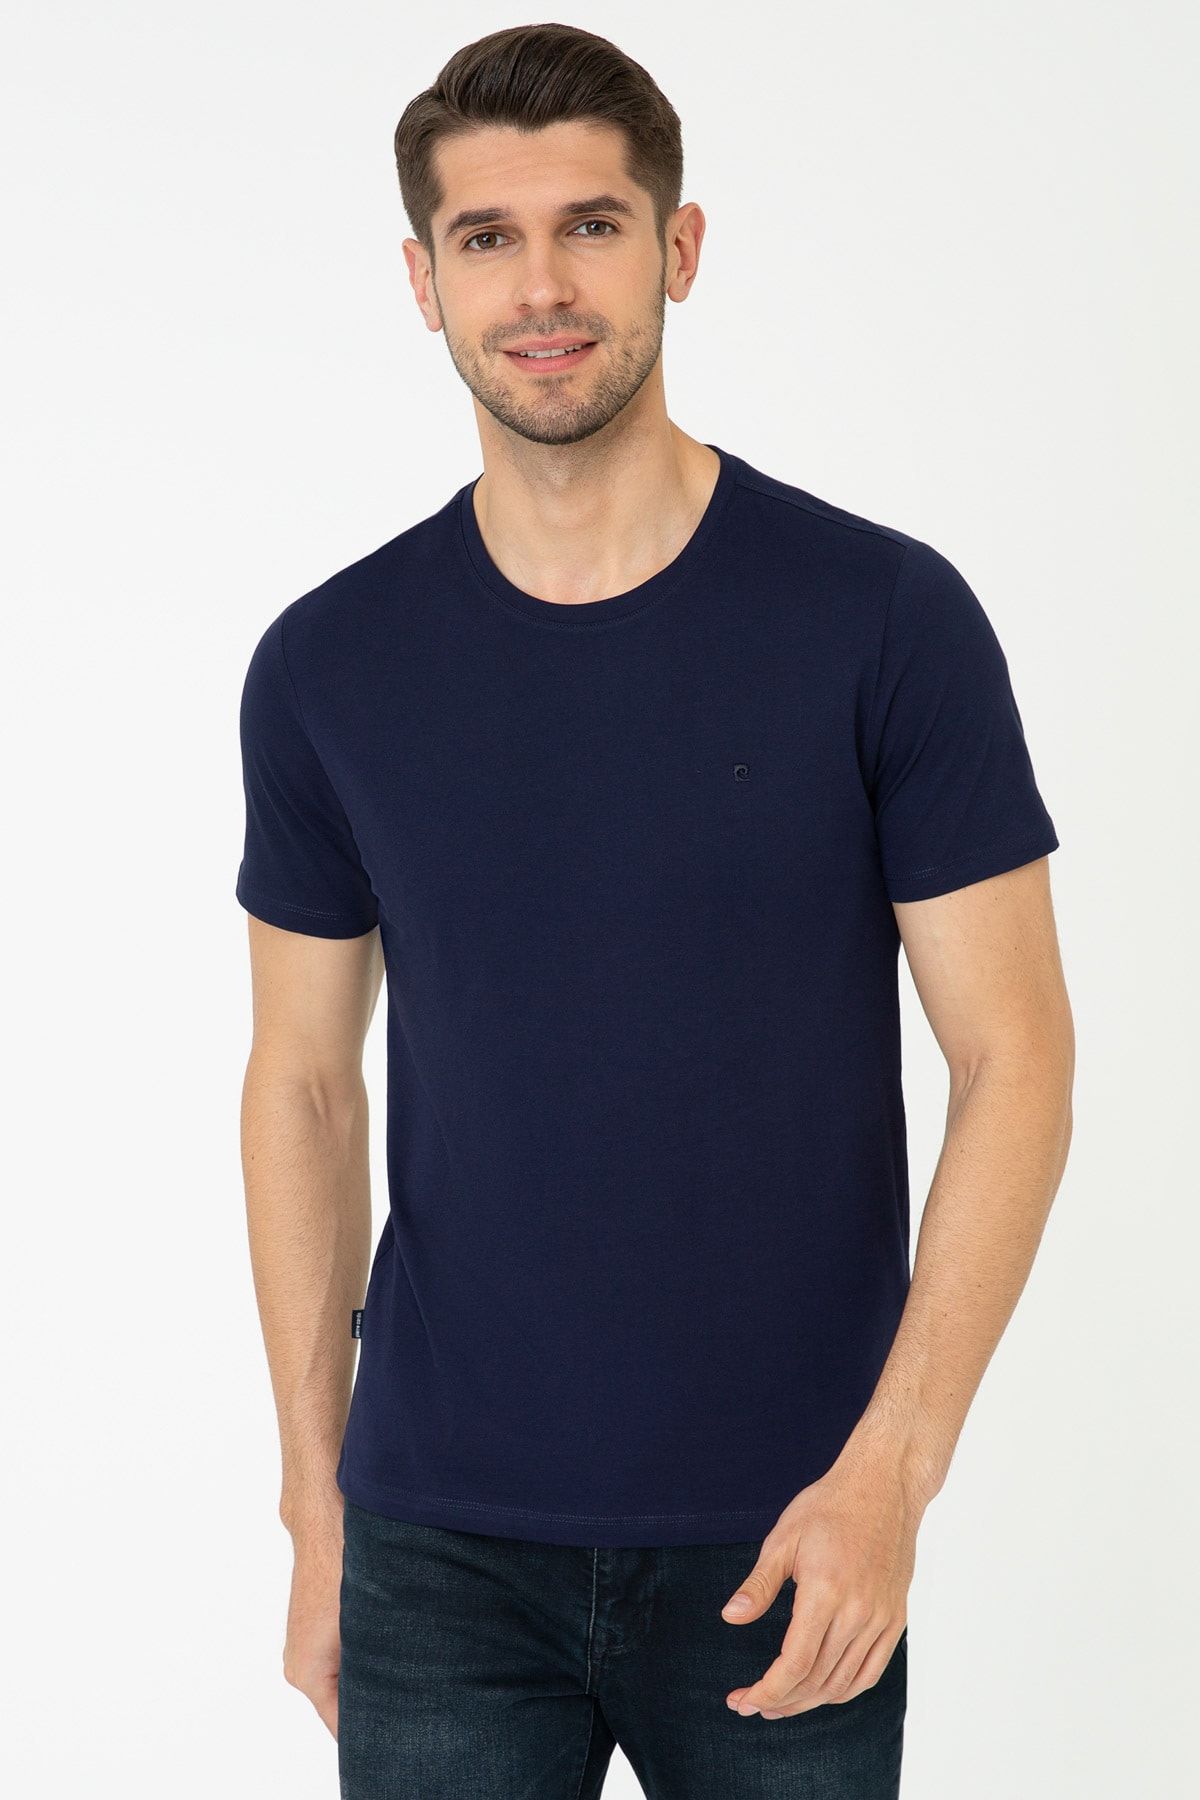 Pierre Cardin Erkek Lacivert T-Shirt G021Gl011.000.1431715